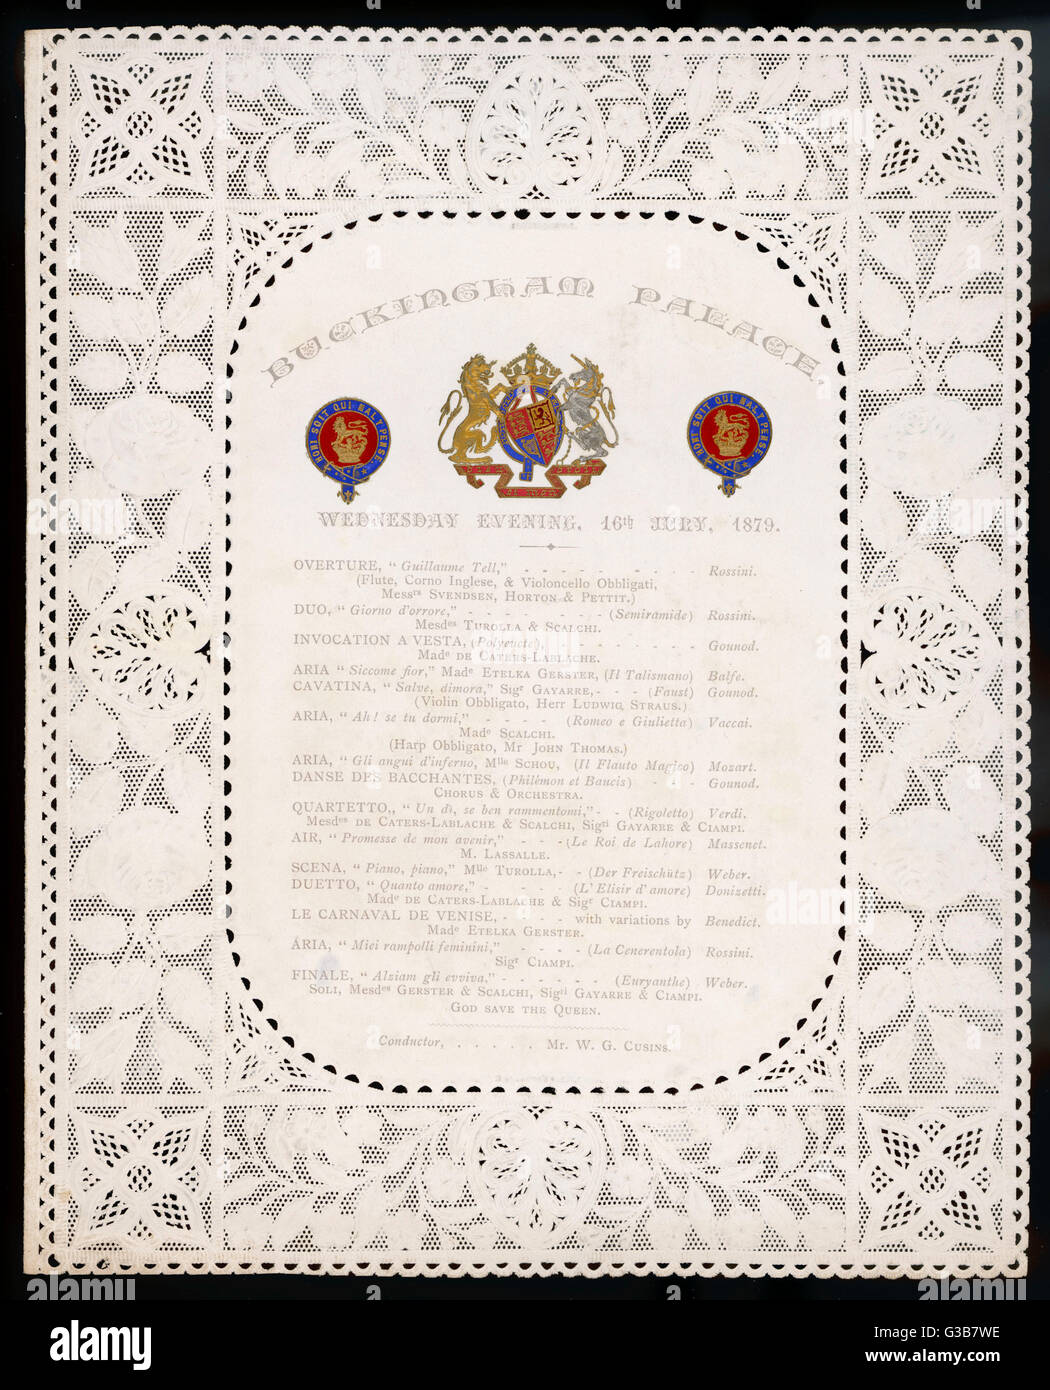 Un rico y variado surtido de piezas, sin duda seleccionado por Victoria misma, realizada en el Palacio de Buckingham. Fecha: 16 de julio de 1879 Foto de stock